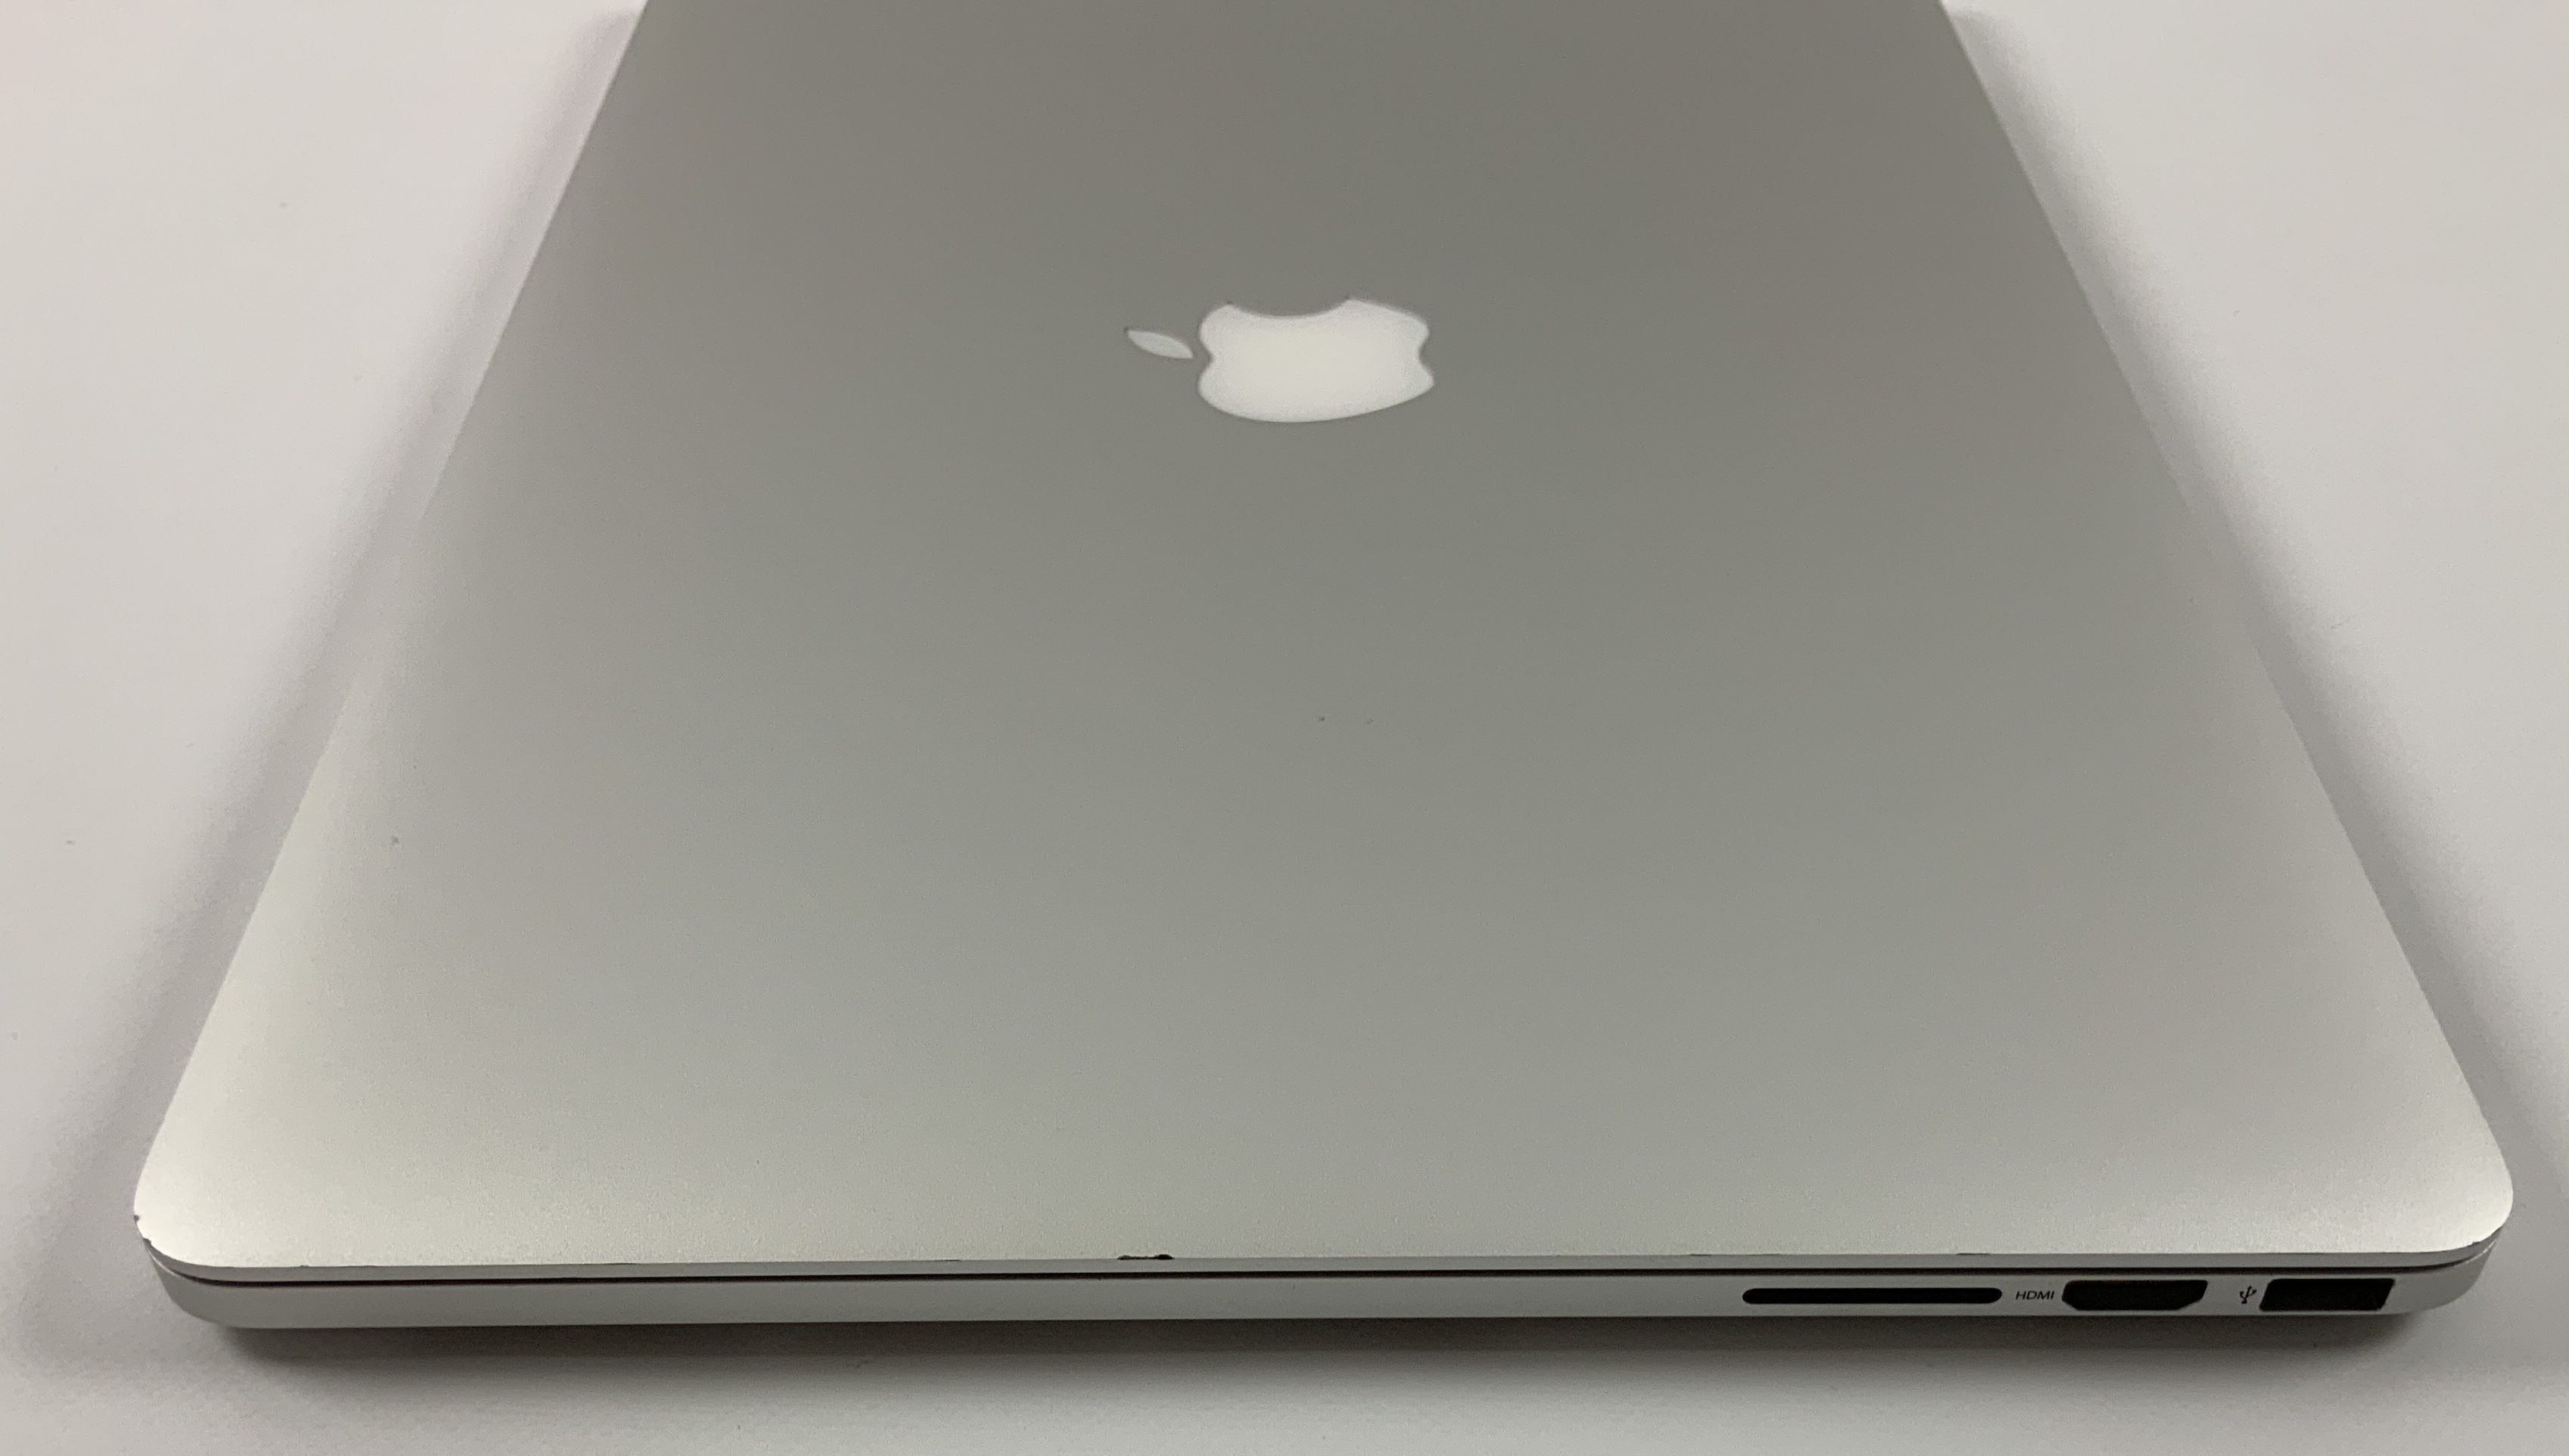 MacBook Pro Retina 15" Mid 2015 (Intel Quad-Core i7 2.2 GHz 16 GB RAM 256 GB SSD), Intel Quad-Core i7 2.2 GHz, 16 GB RAM, 256 GB SSD, Bild 3